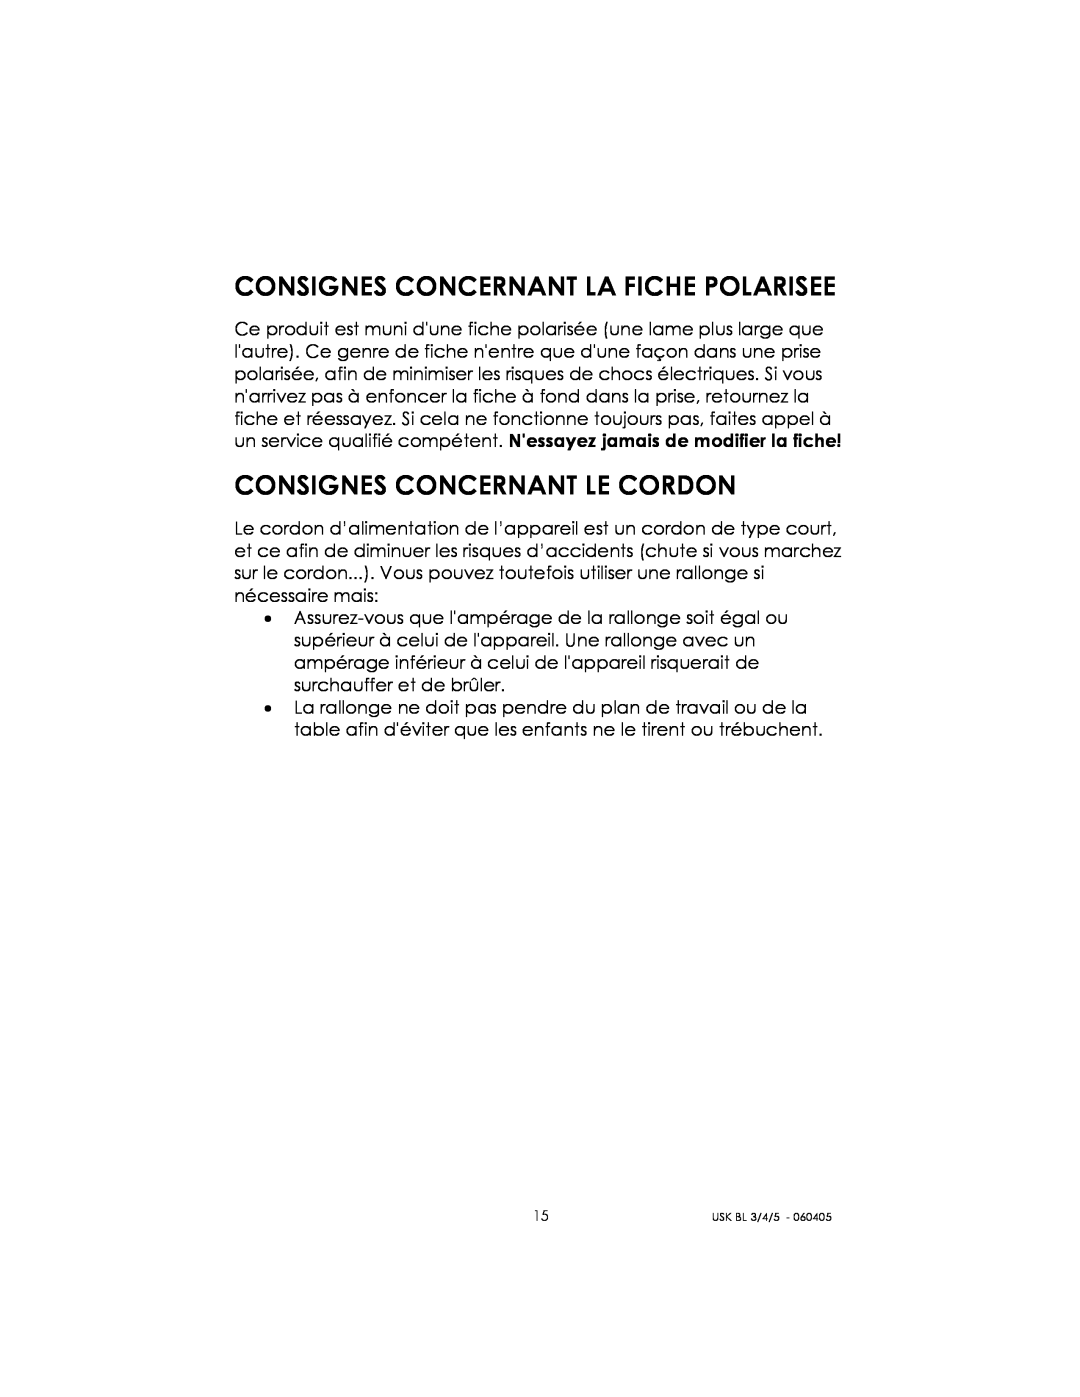 Kalorik USK BL 3/4/5 manual Consignes Concernant La Fiche Polarisee, Consignes Concernant Le Cordon 